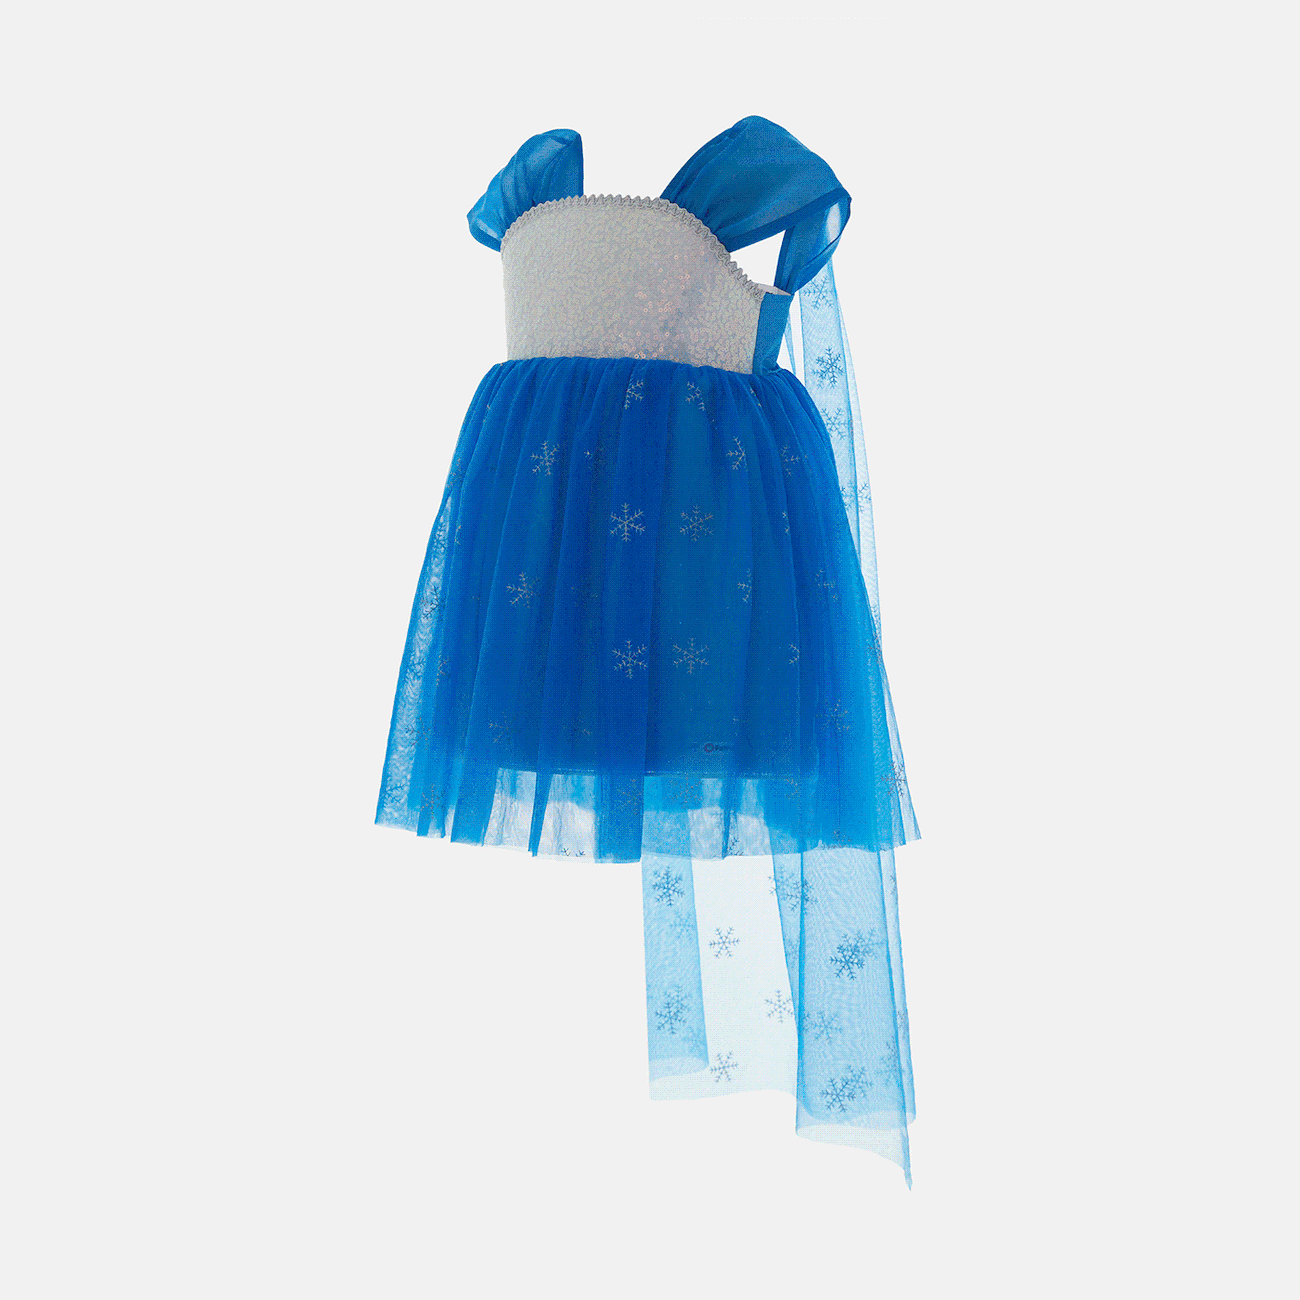 Go-Glow Light Up Blaues Partykleid mit paillettenbesetztem Schneeflocken-Glitzer und abnehmbarem Umhang inklusive Controller (eingebauter Akku) dunkelblau / weiß big image 1